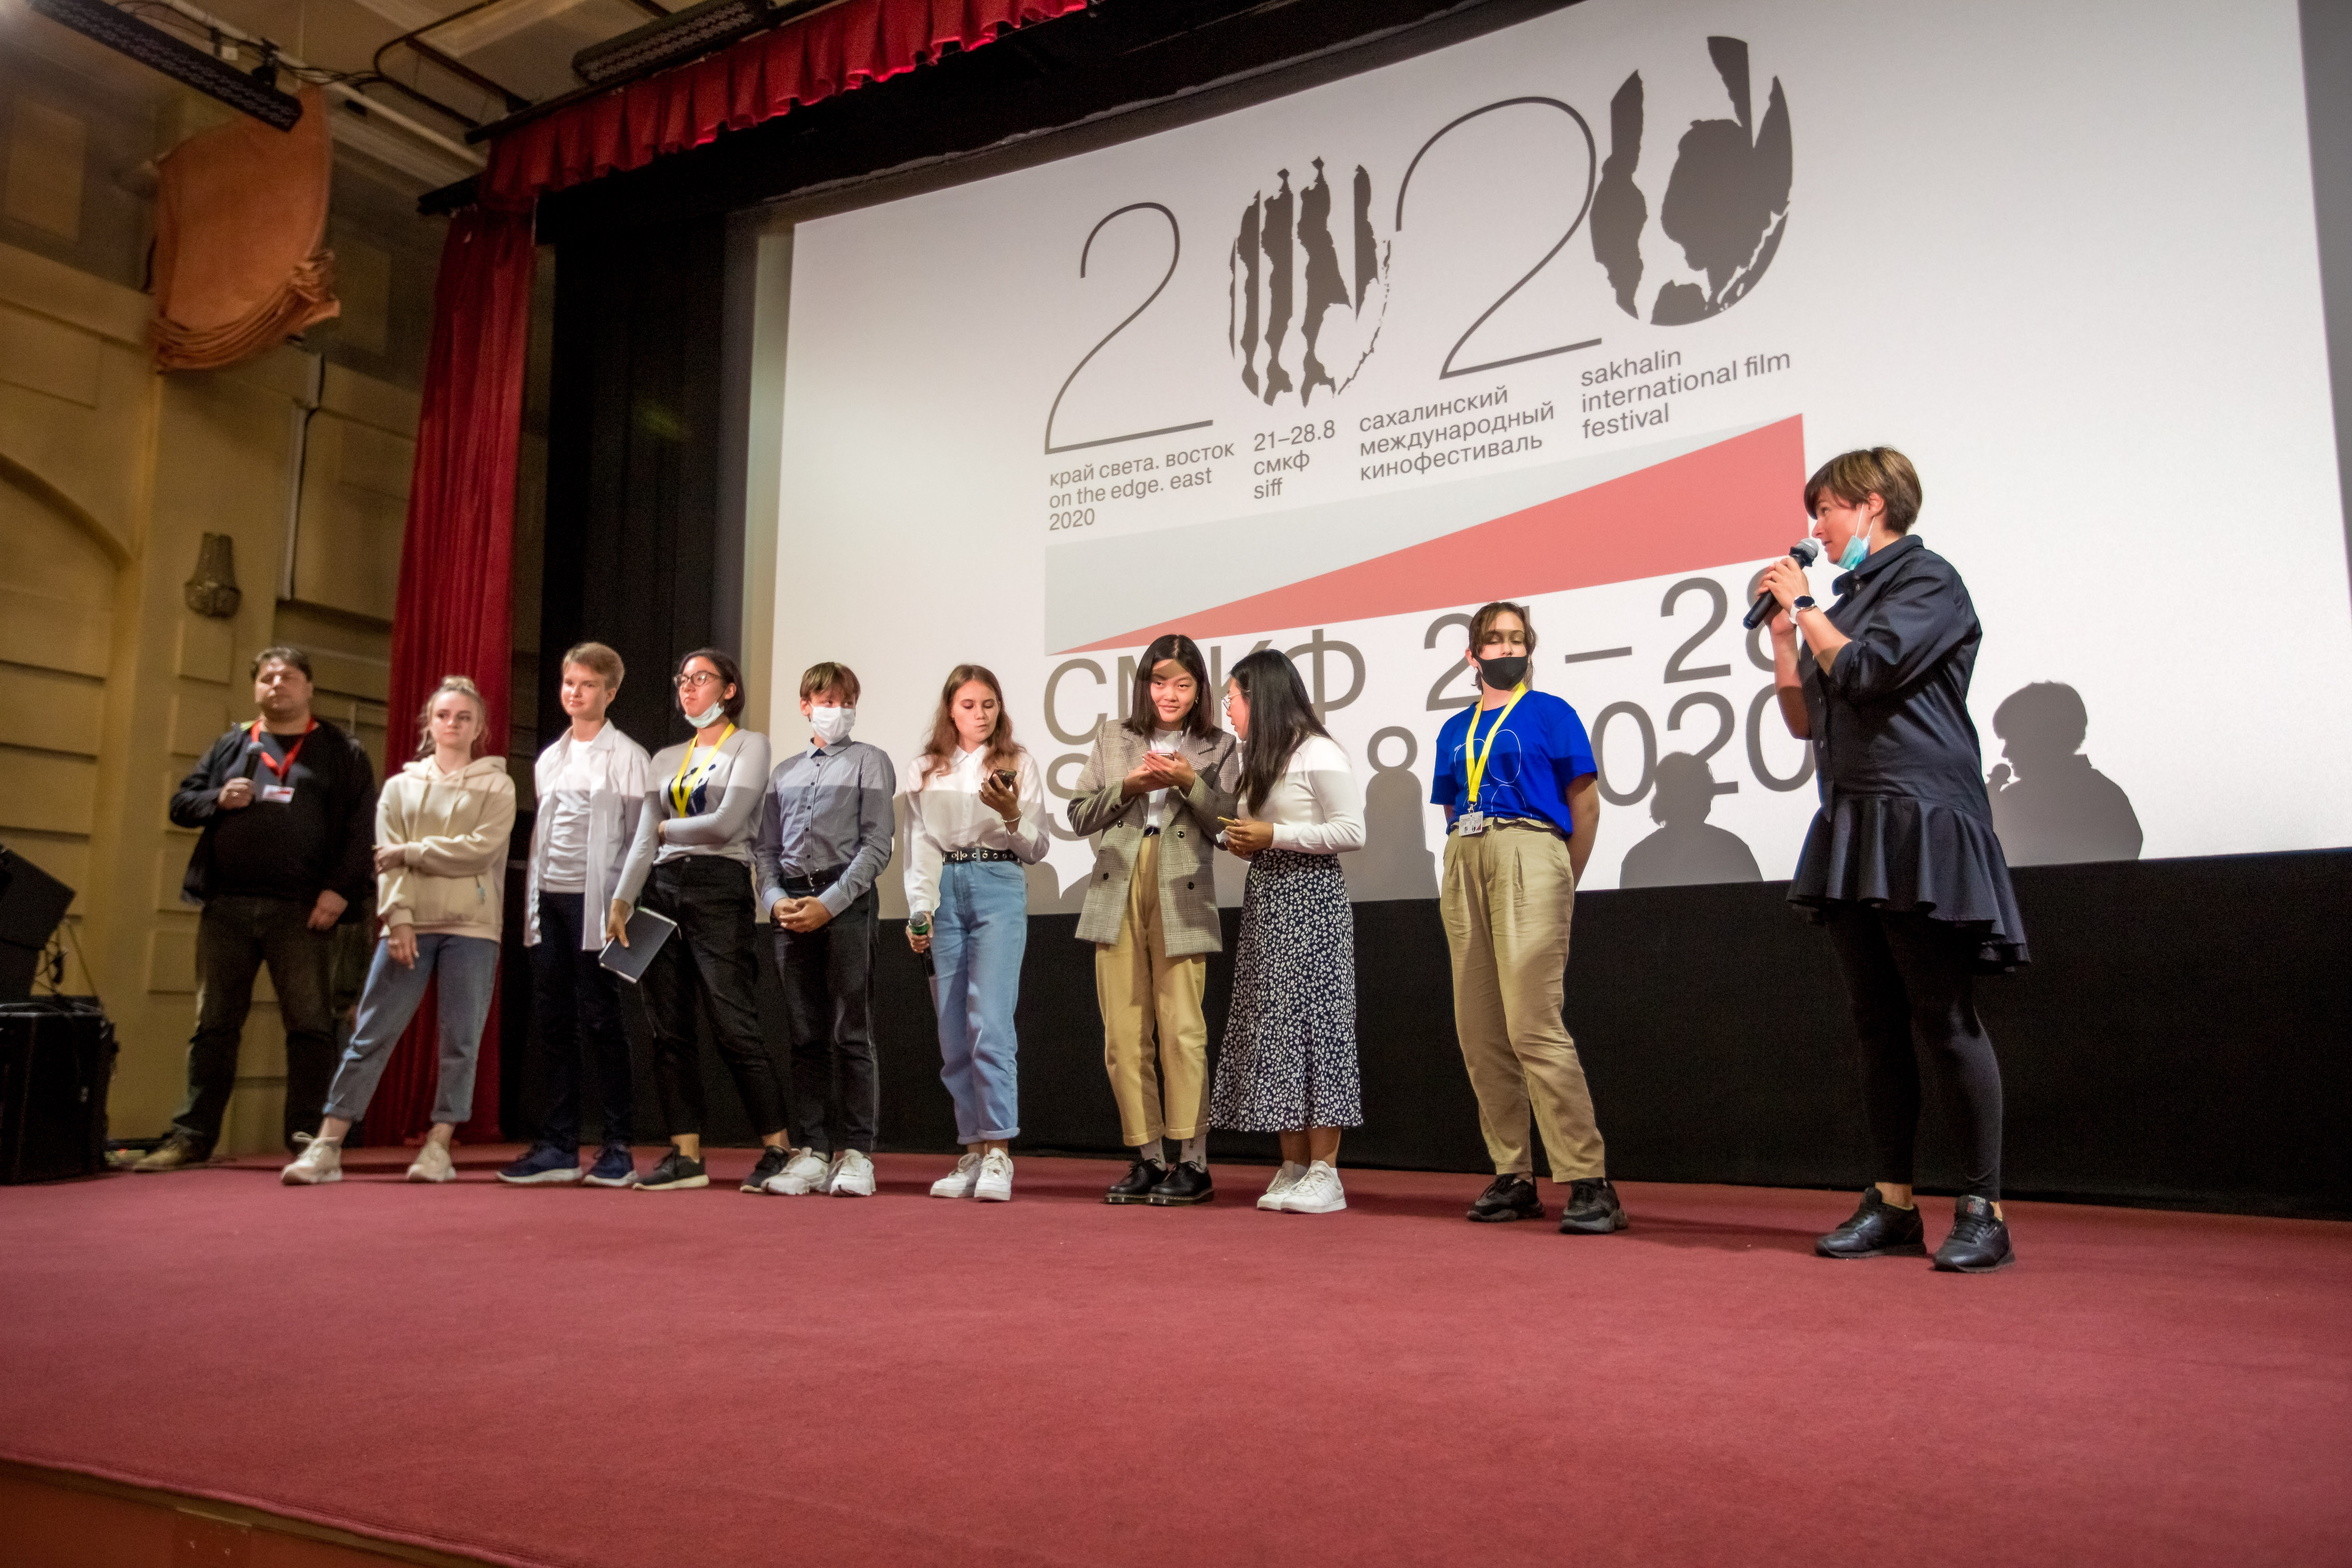 Буллинг, подростки и будущее кино: как прошел кинофестиваль «Край света-2020» (фото 8)